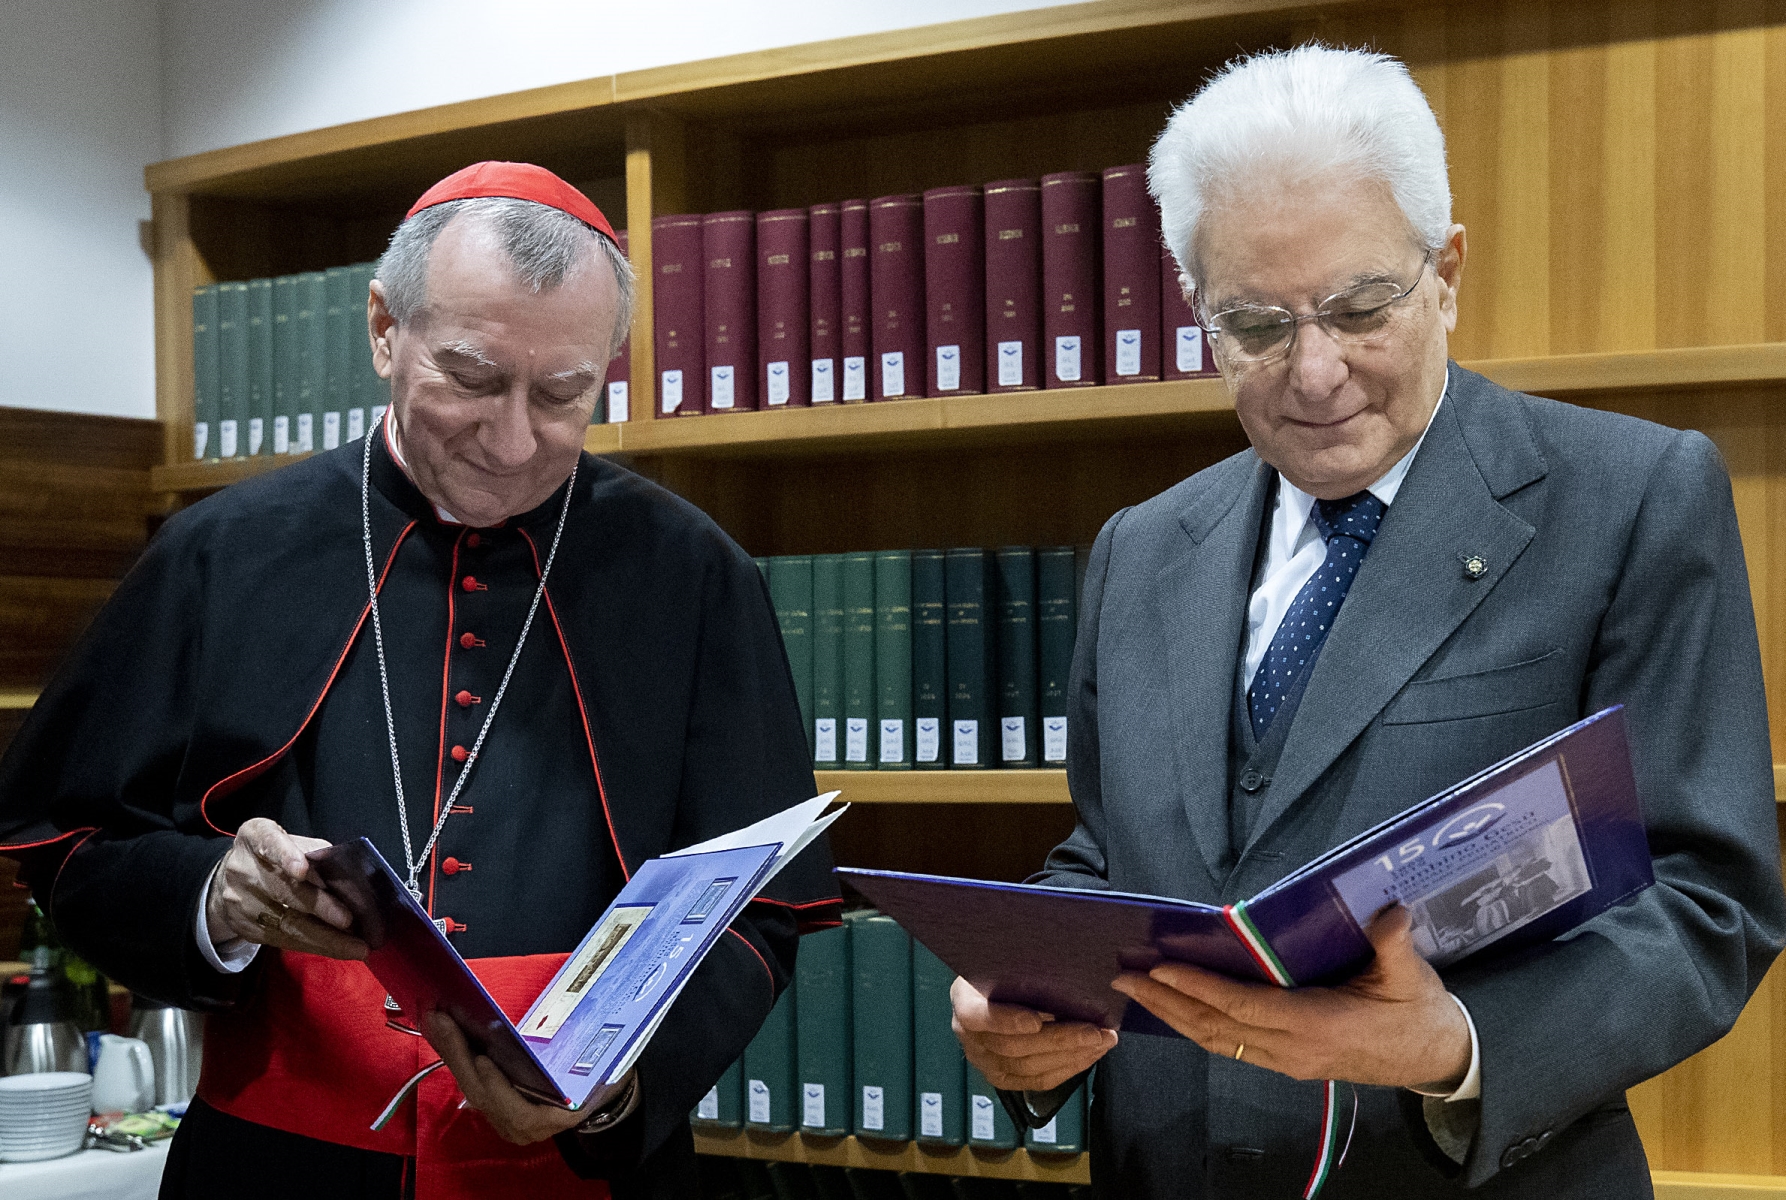 Il Presidente Sergio Mattarella con S. Em. Rev.ma il Cardinale Pietro Parolin, Segretario di Stato di Sua Santità all'Ospedale Pediatrico Bambino Gesù per i 150 anni della Fondazione